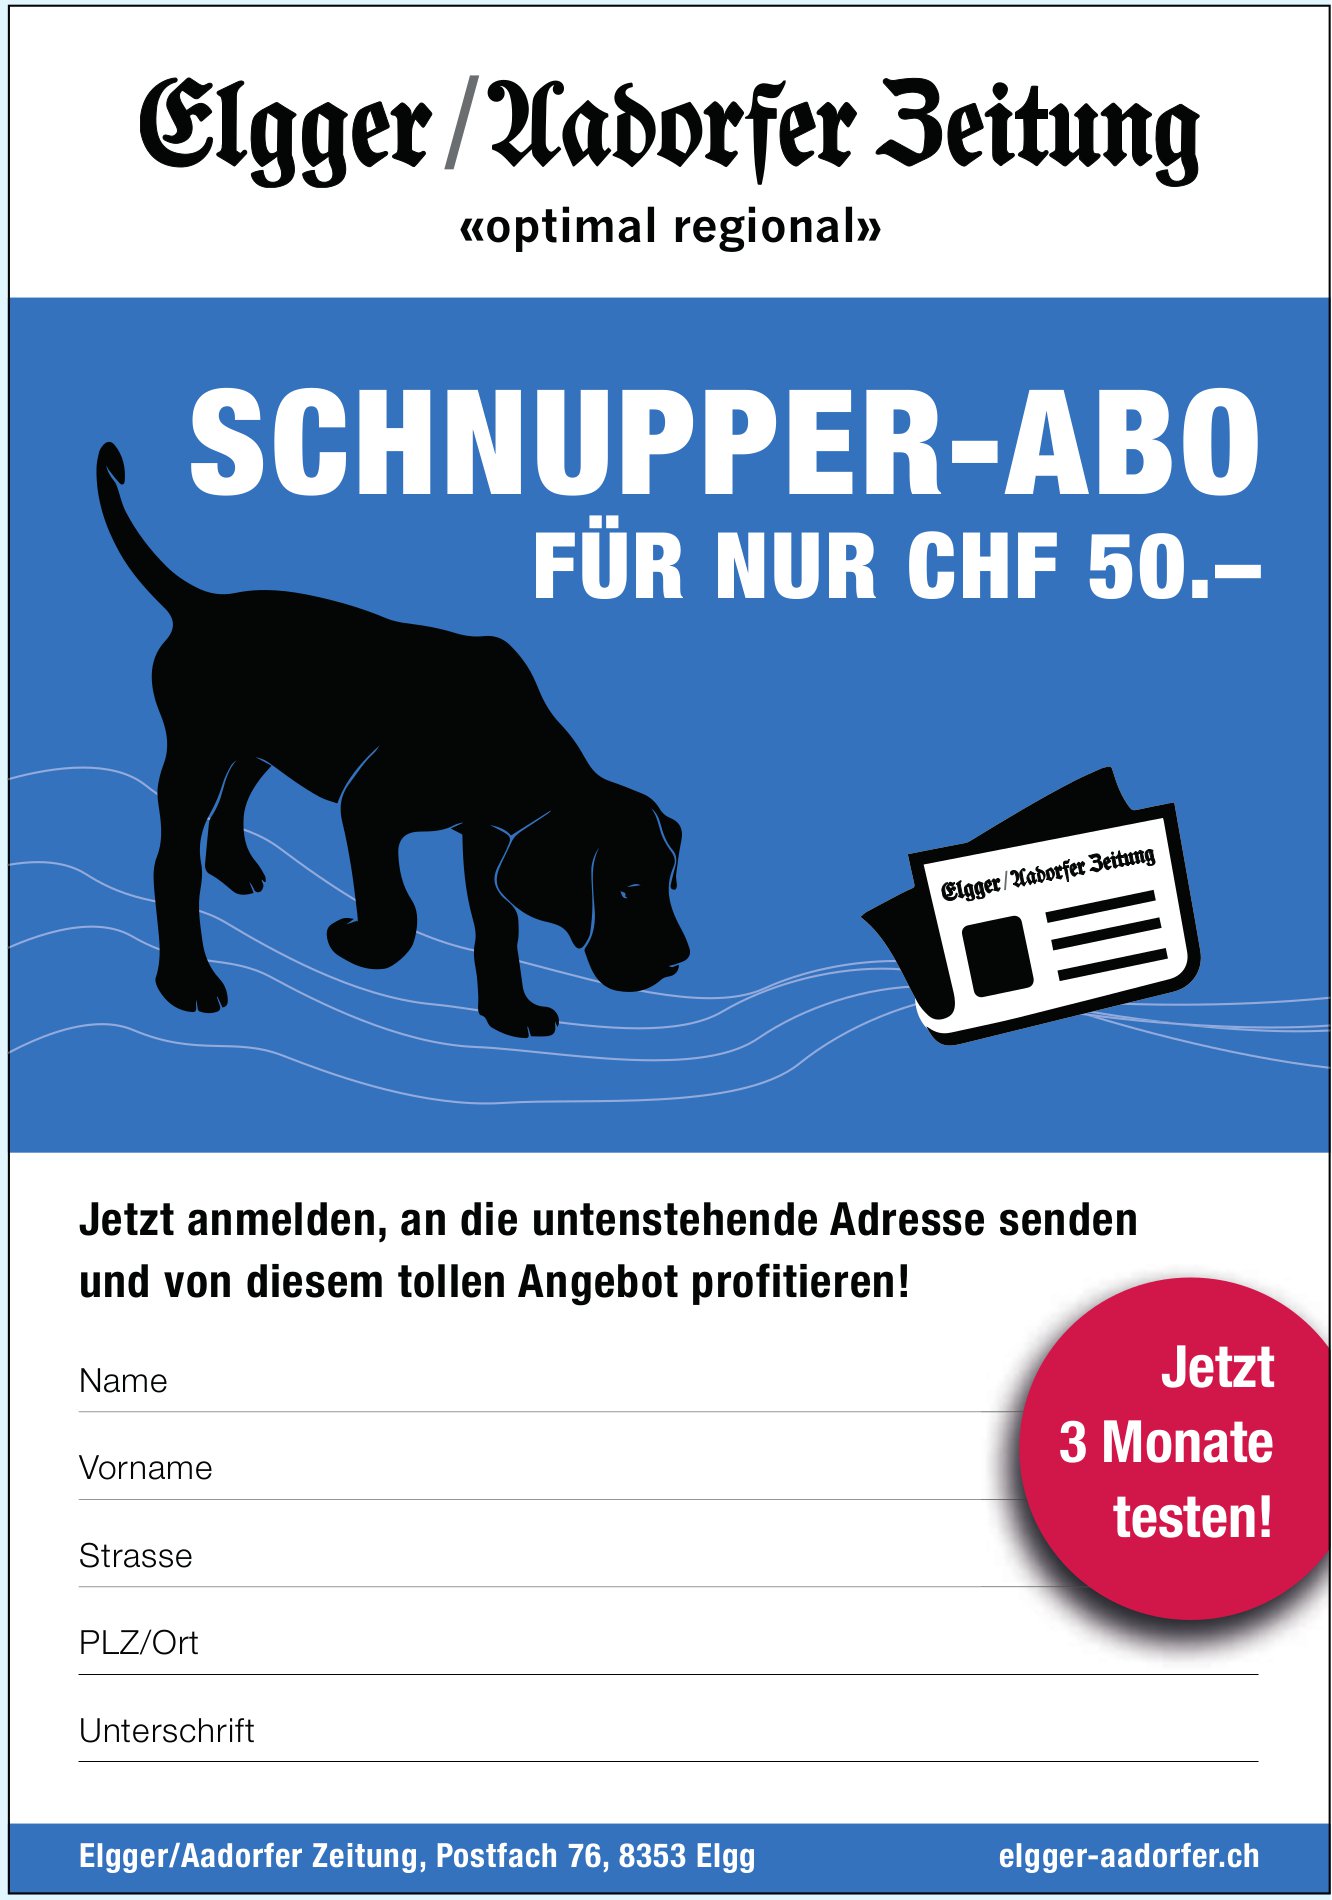 Elgger / Aadorfer Zeitung - Schnupper-Abo für nur CHF 50.–